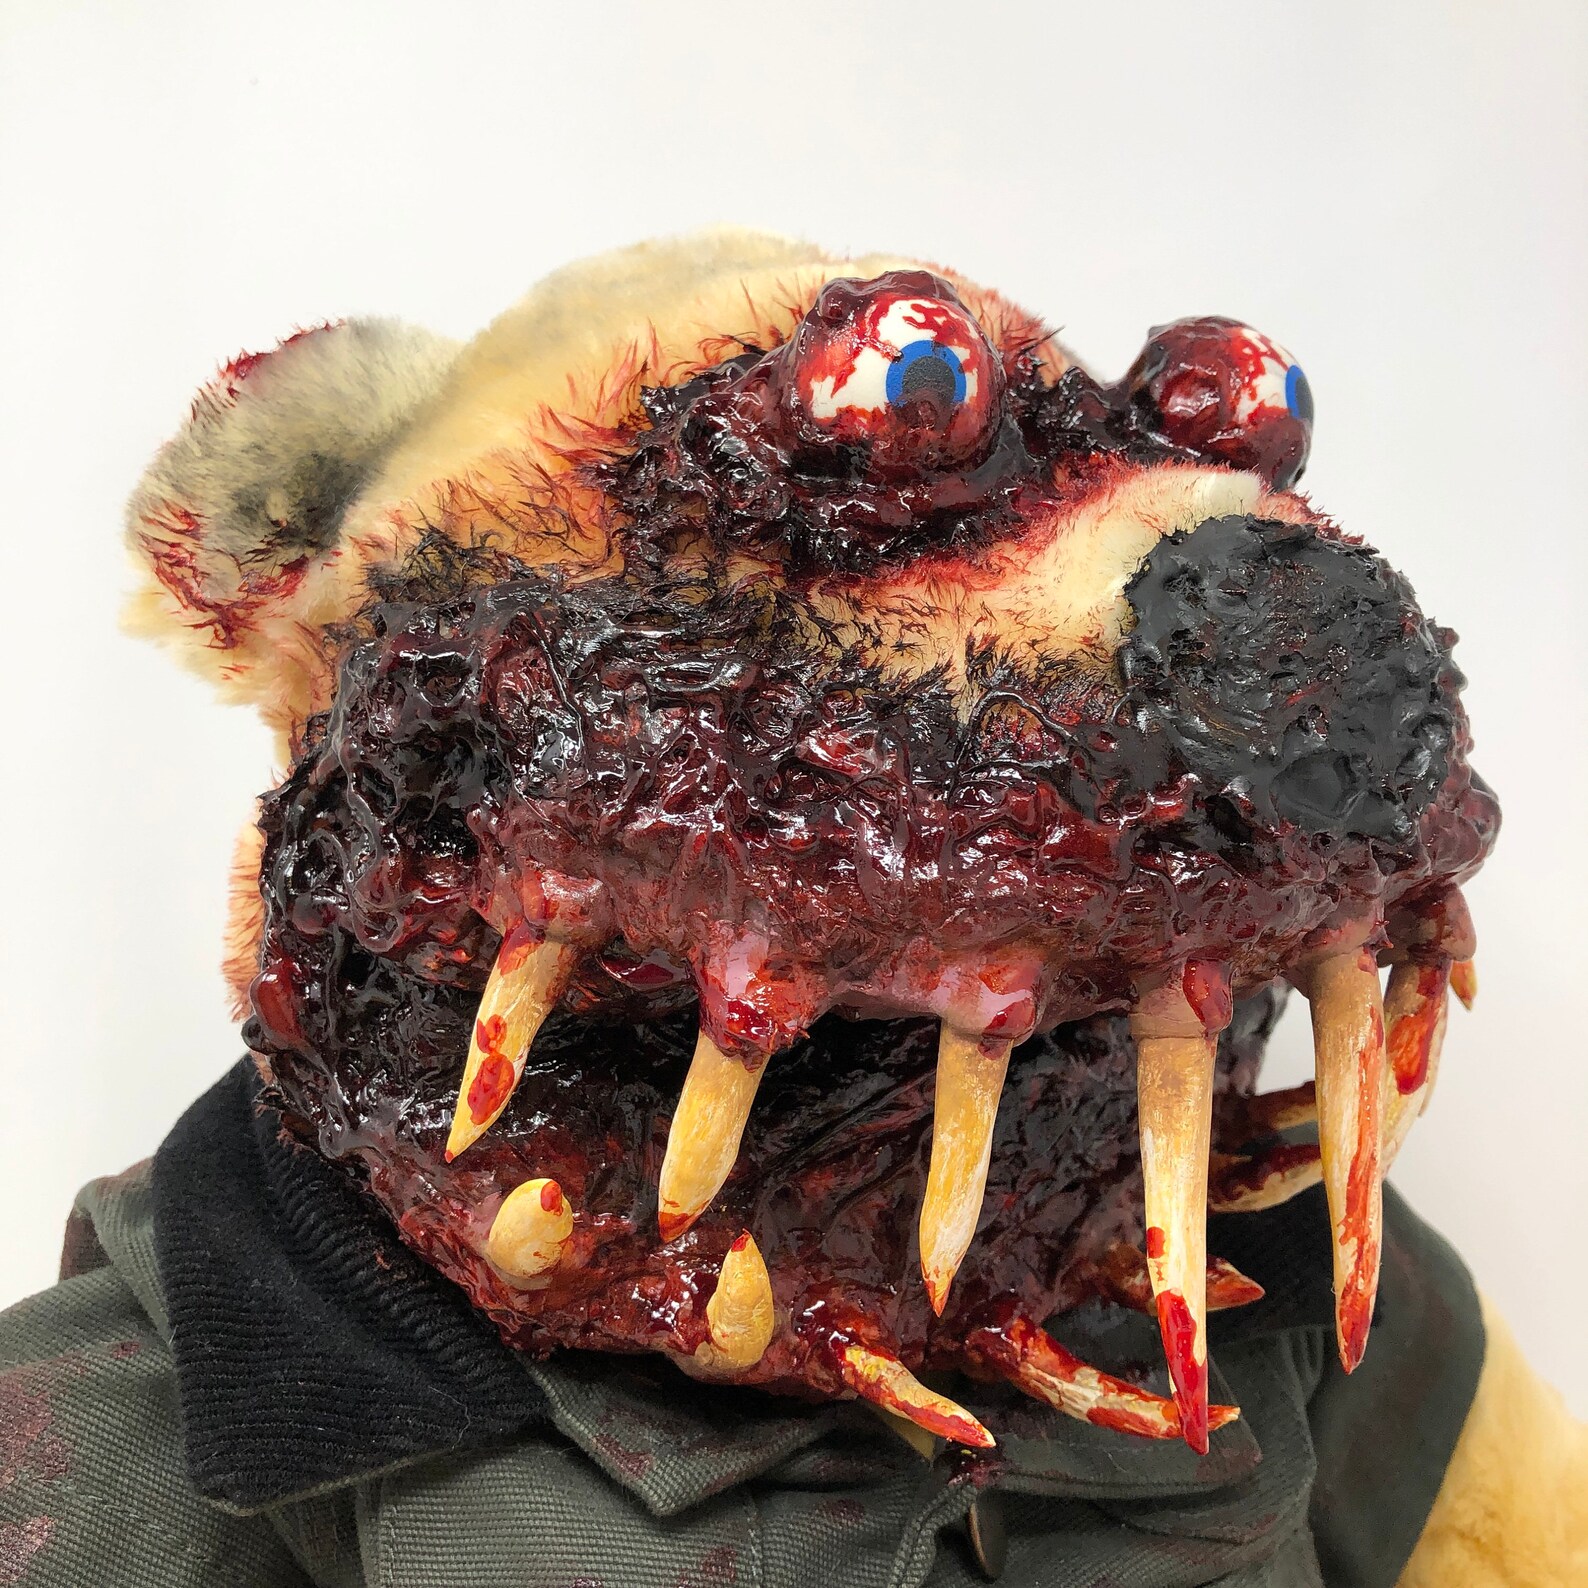 Bob Royally Creepy Creations scary stuffed teddy bear horror | Etsy